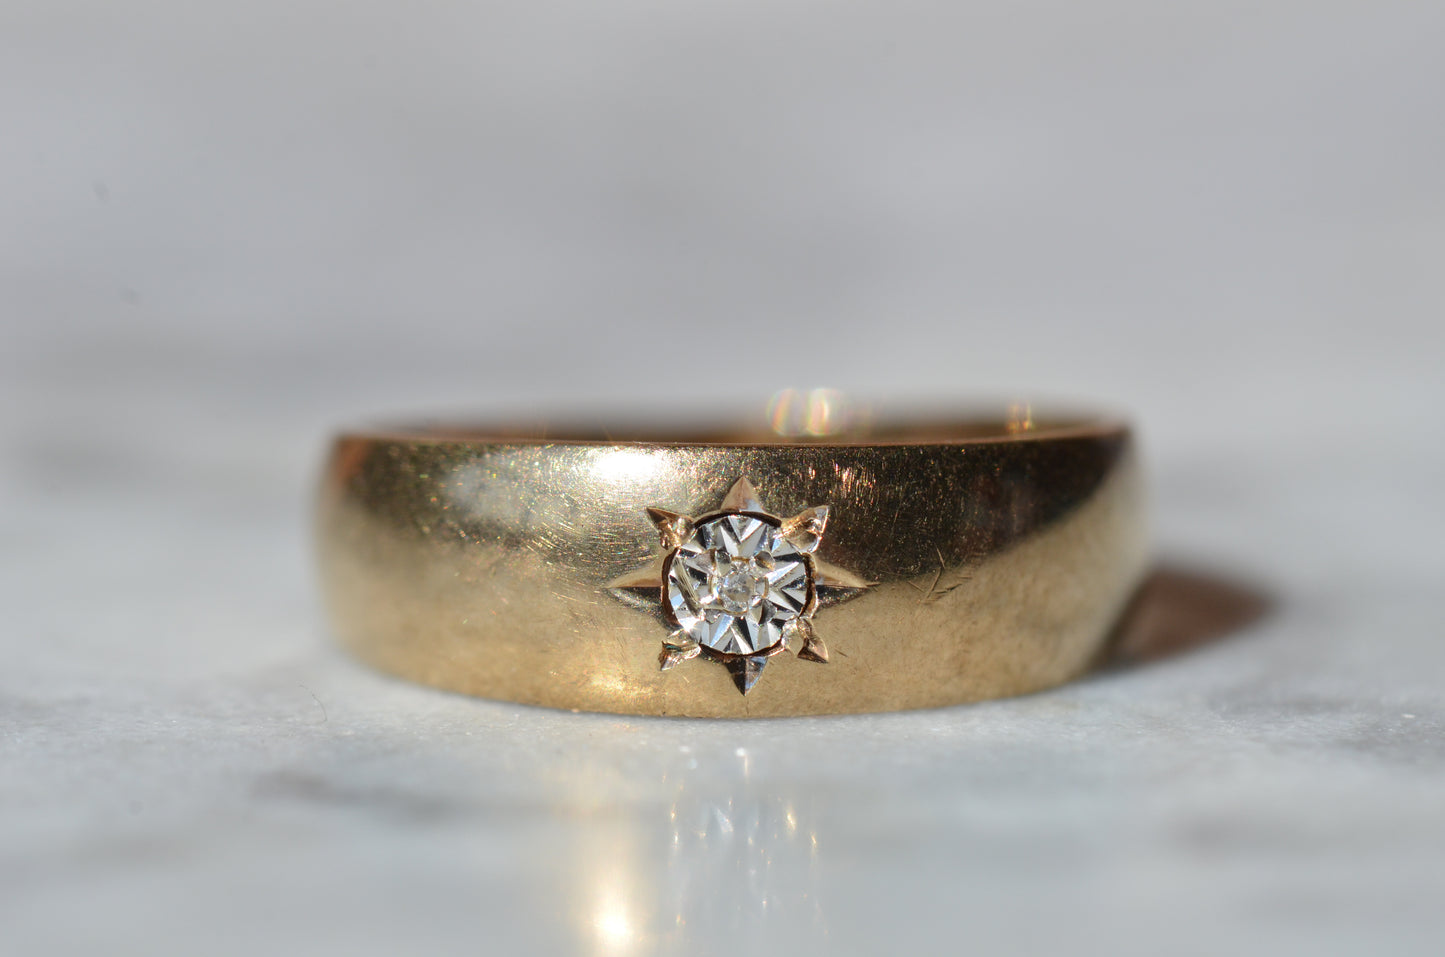 Antique-Inspired Illusion Starburst Ring